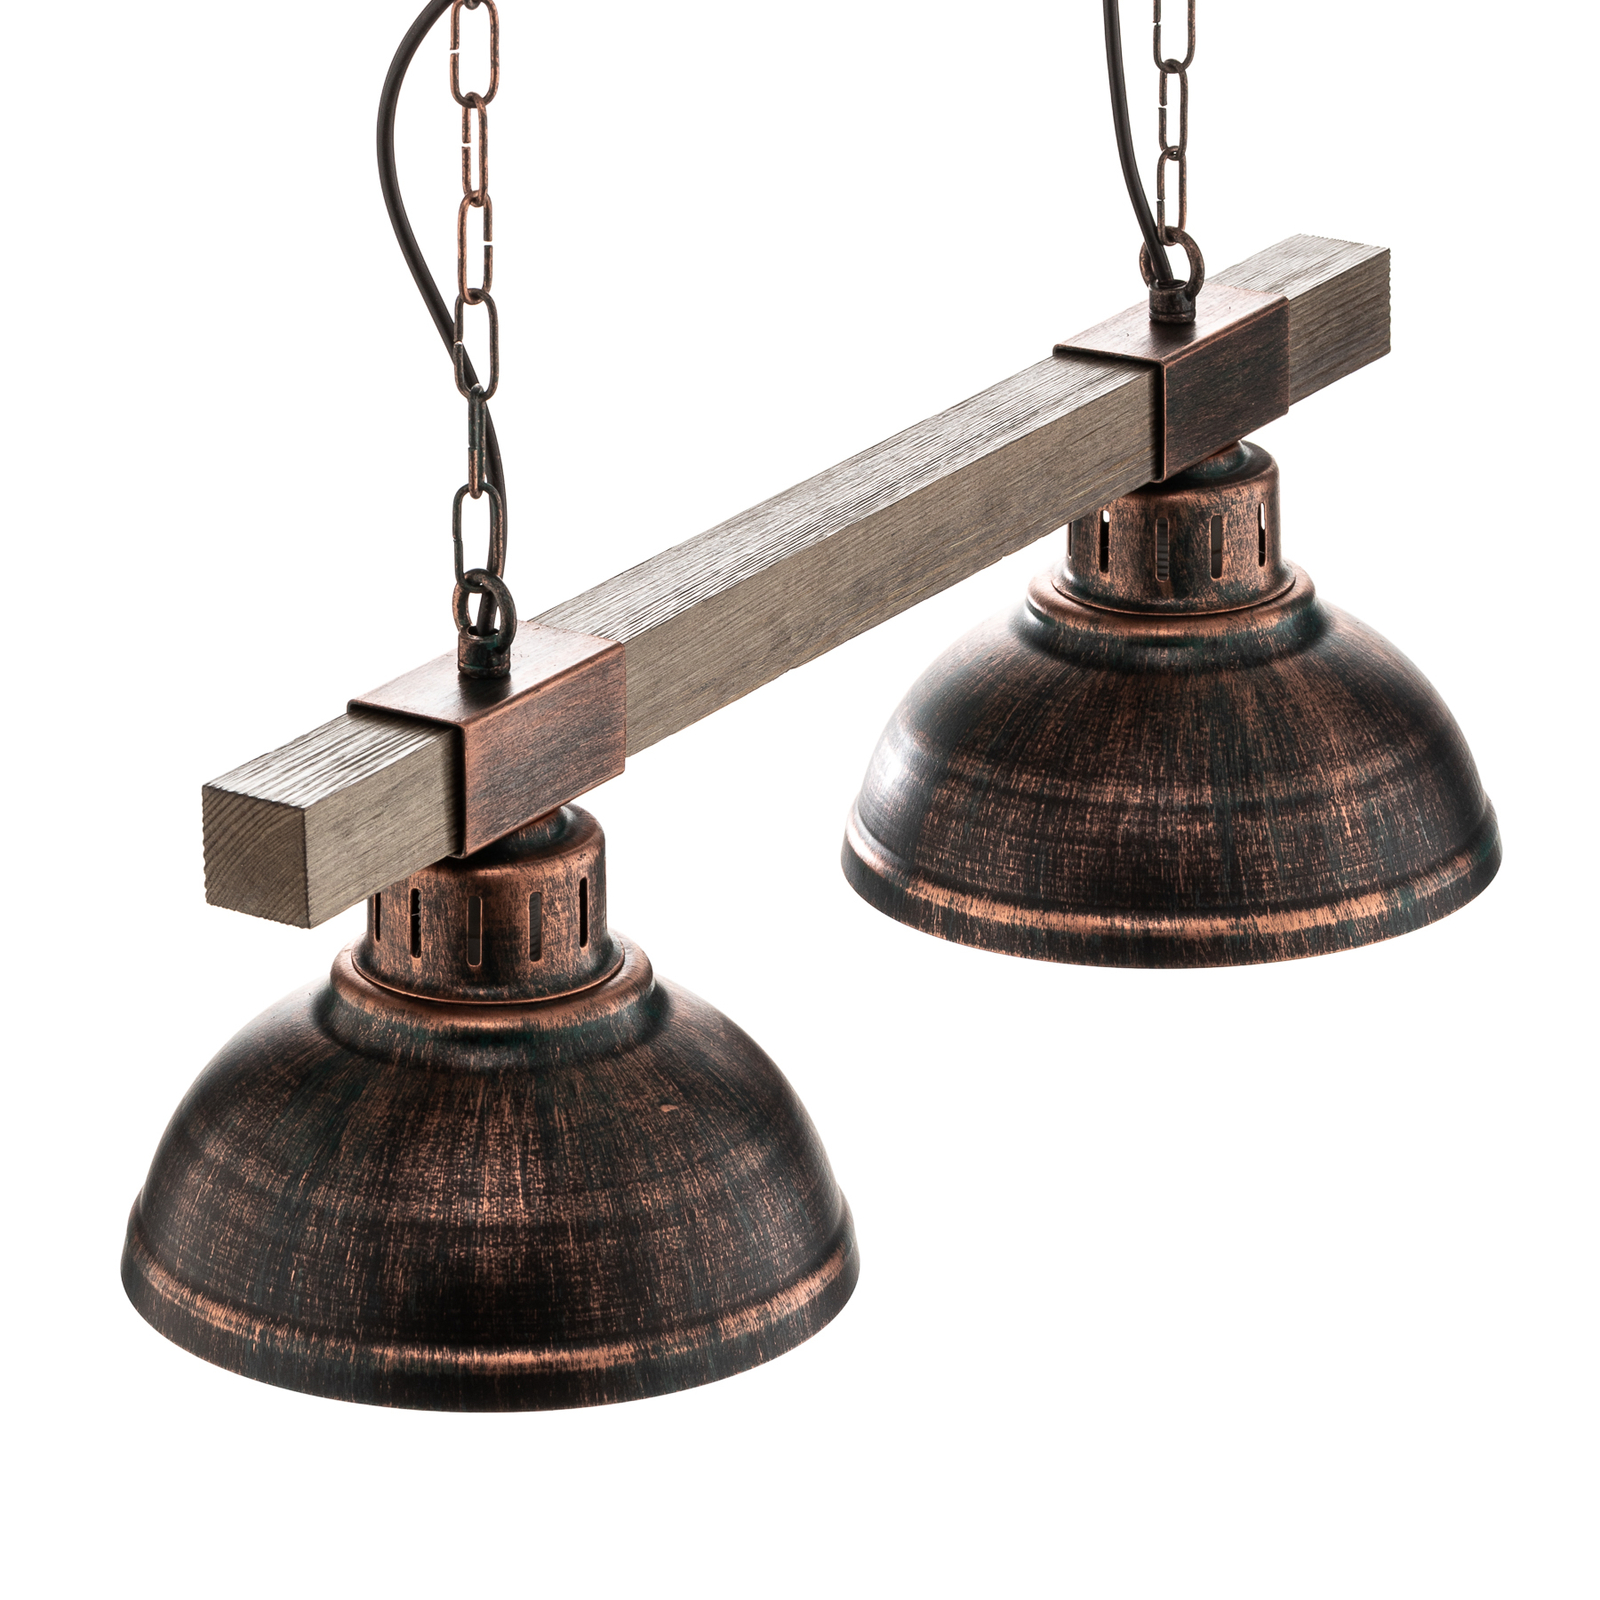 Hakon hanglamp 2-lamps roestbruin/naturel hout